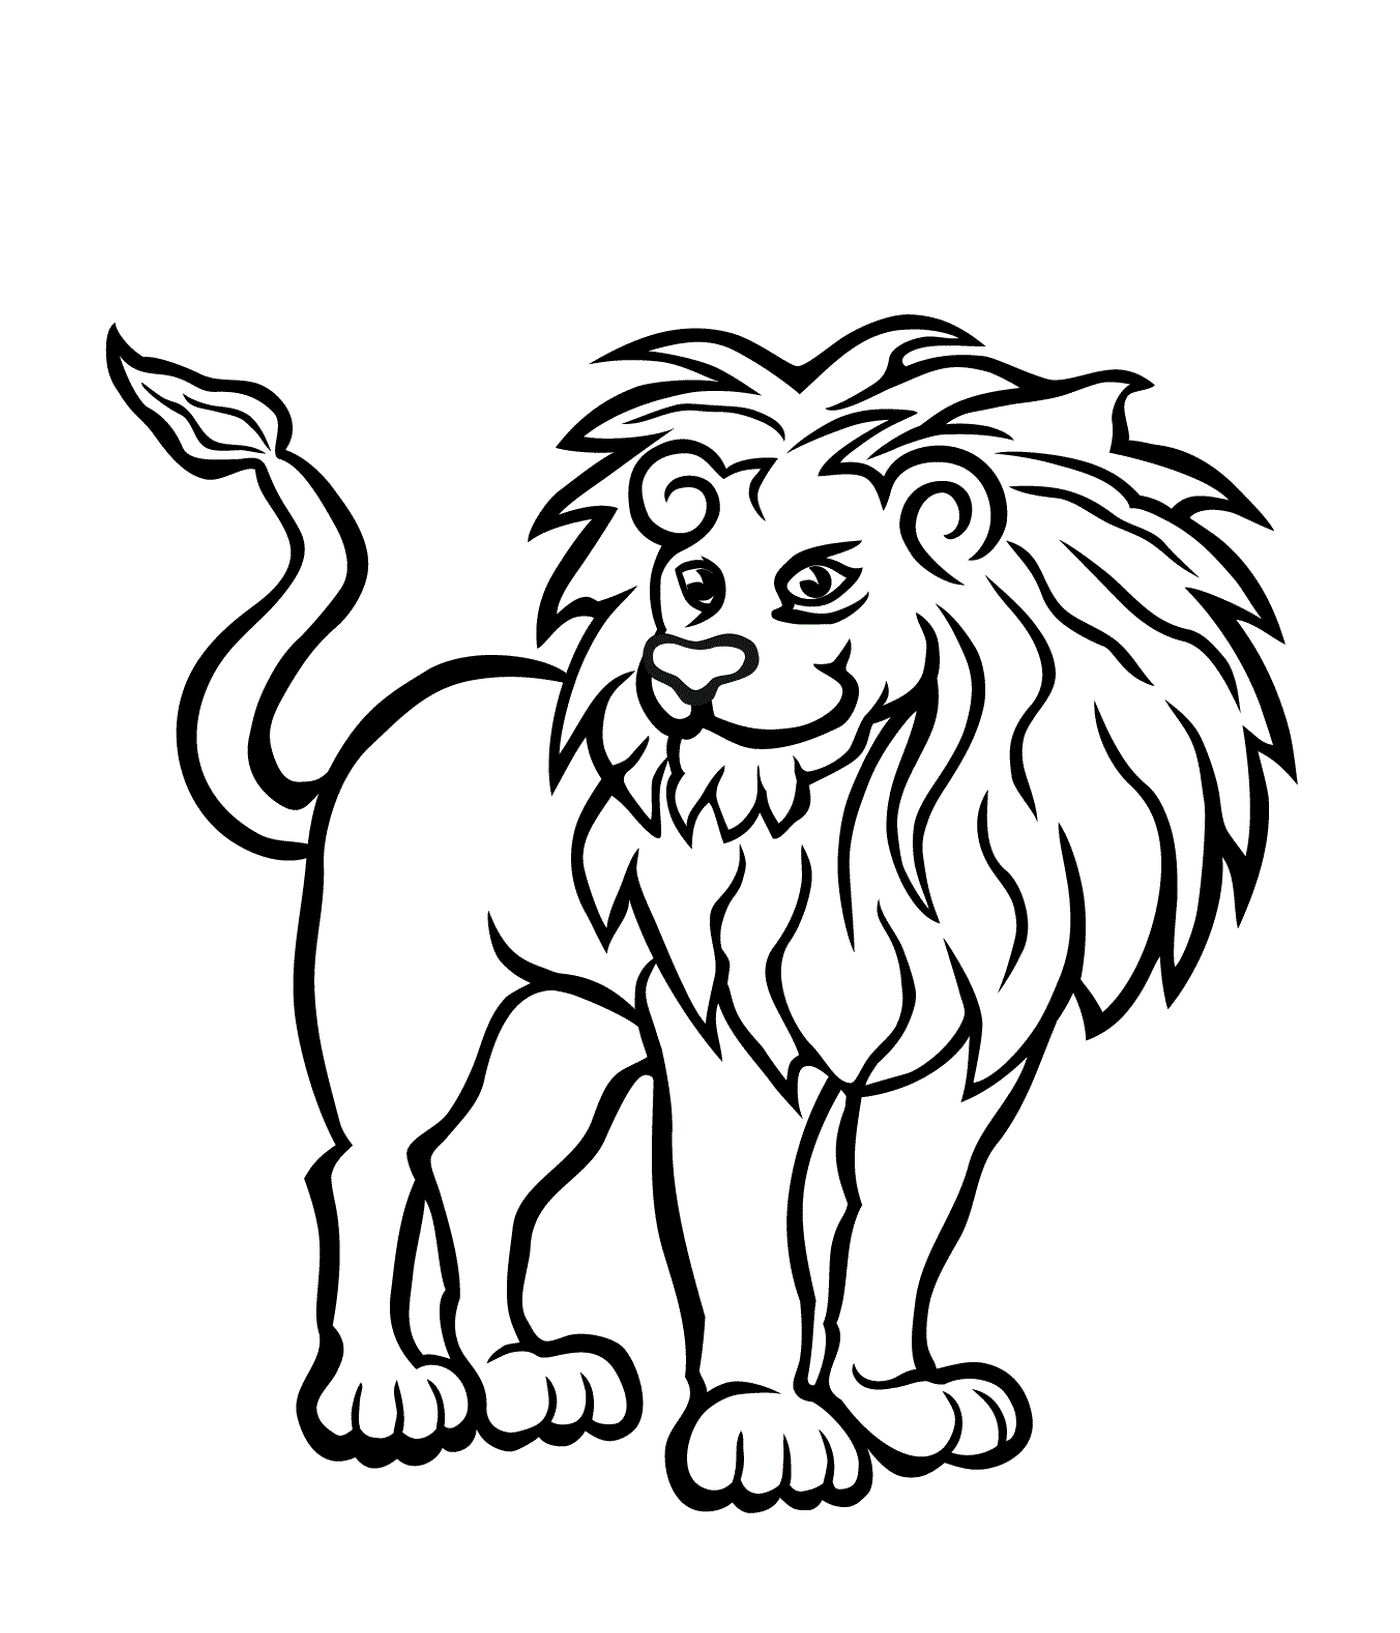  león sano y fuerte 